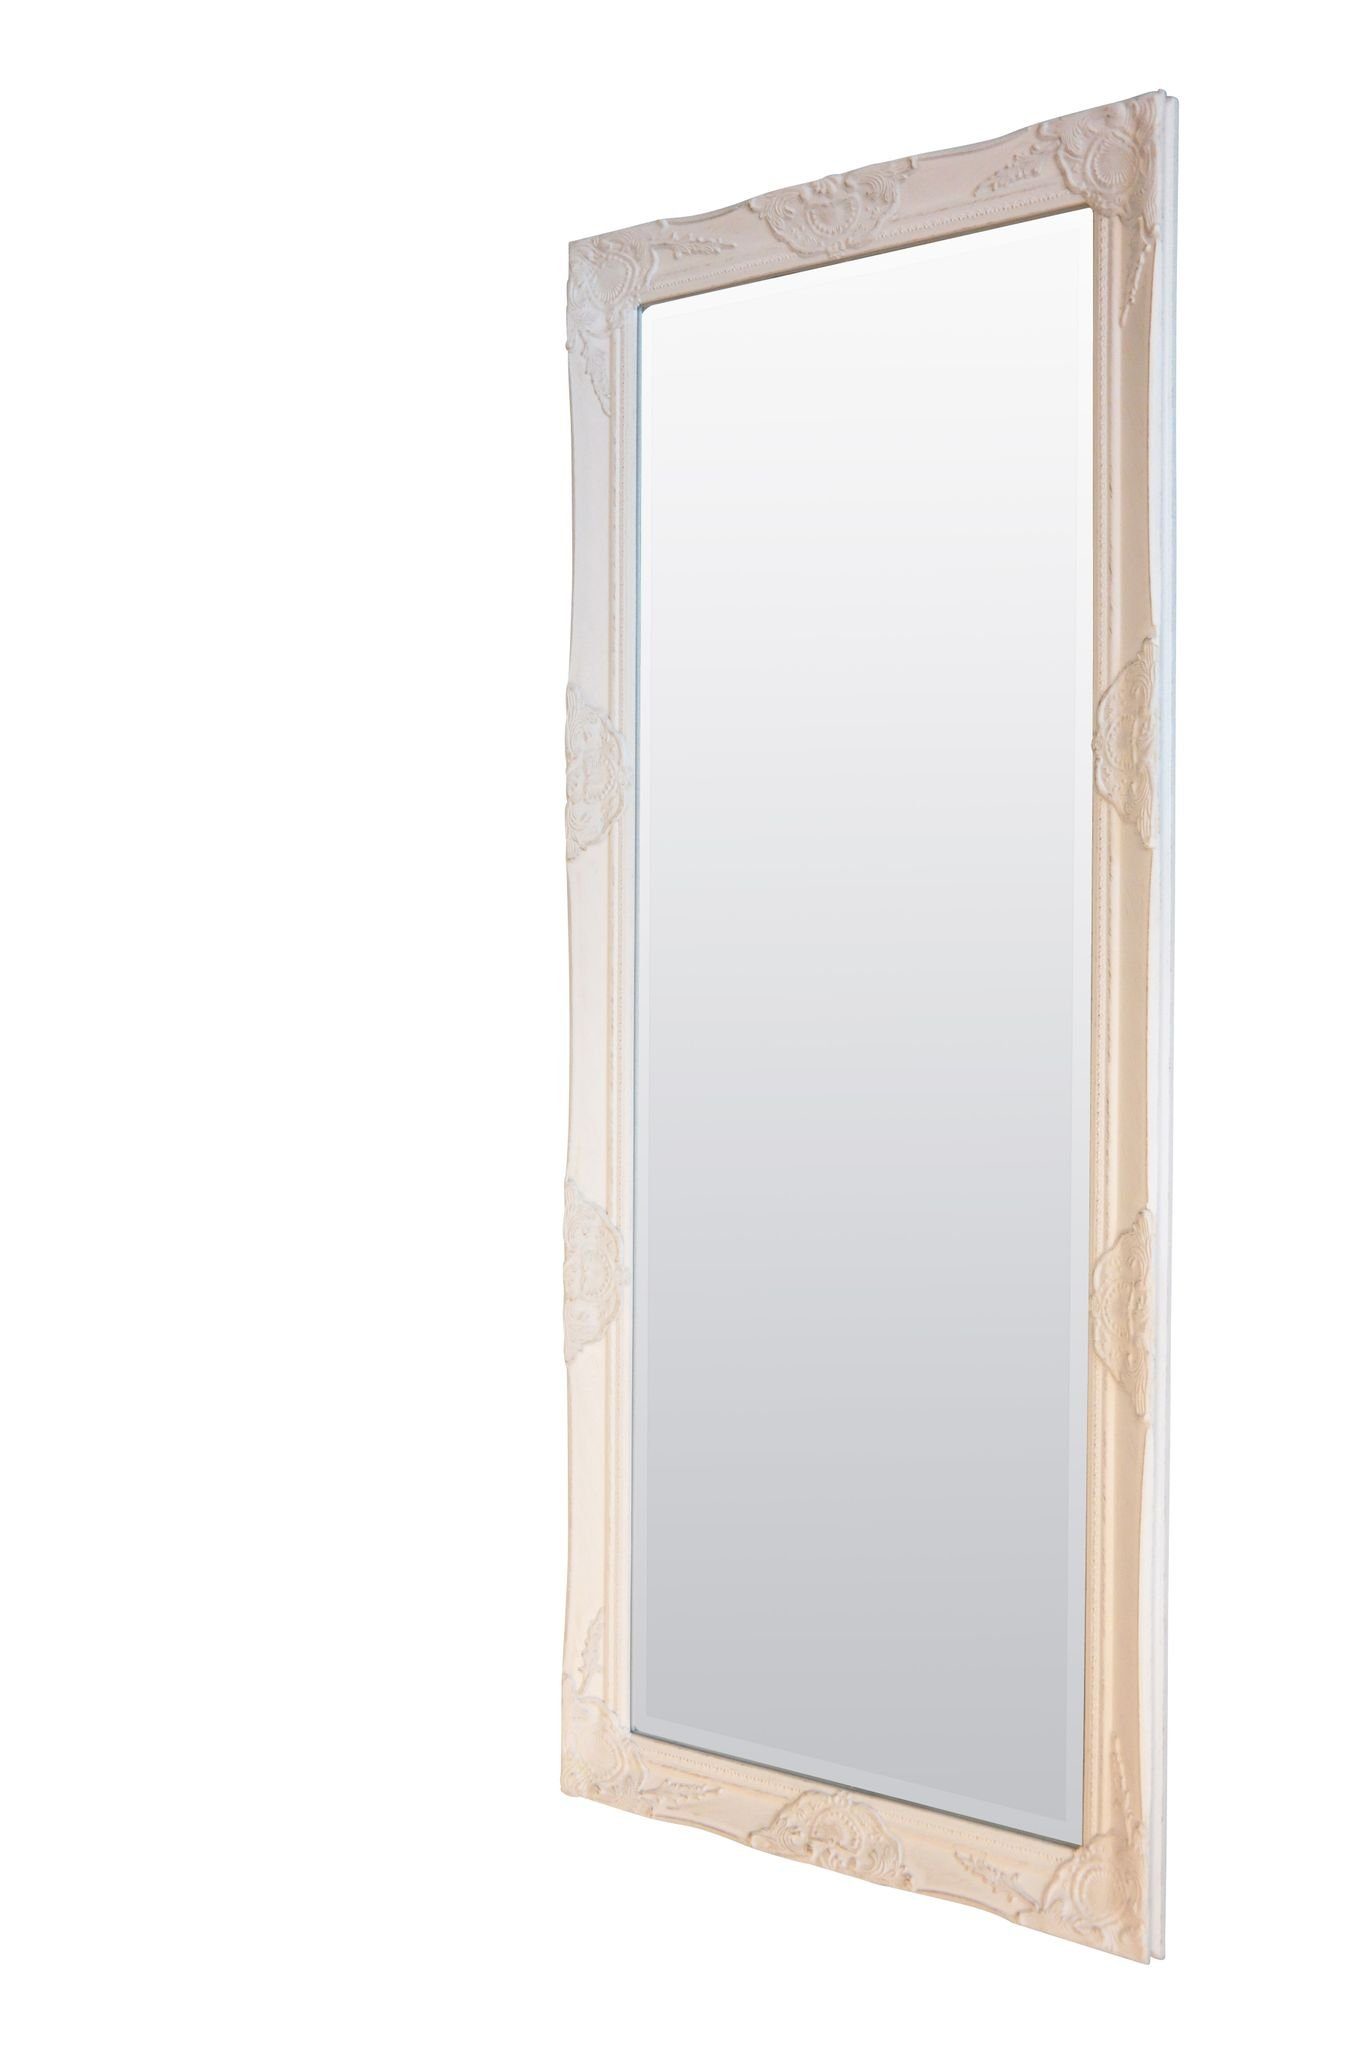 elbmöbel Wandspiegel Wandspiegel 187x62x7 white, Spiegel: Ganzkörperspiegel 182x62x5 cm weiß Vintage Stil